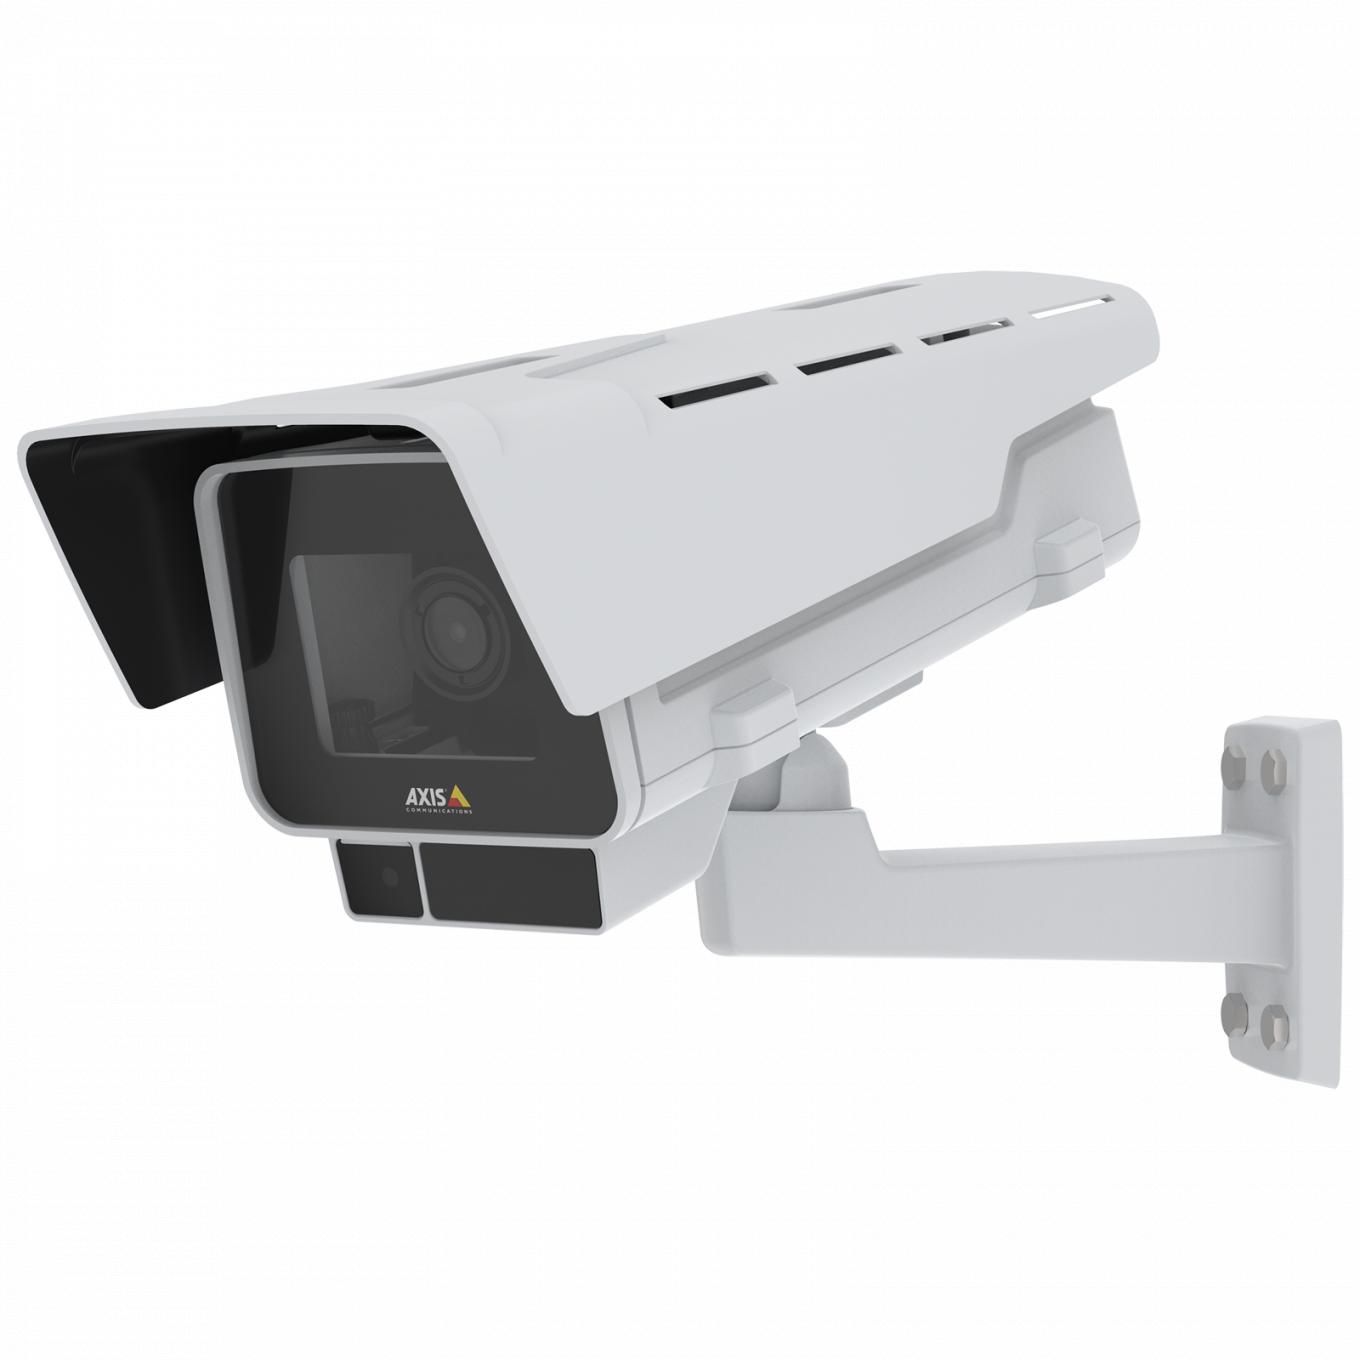 Die IP-Kamera AXIS P1377-LE verfügt über OptimizedIR und Forensic WDR. Ansicht des Produkts von links.